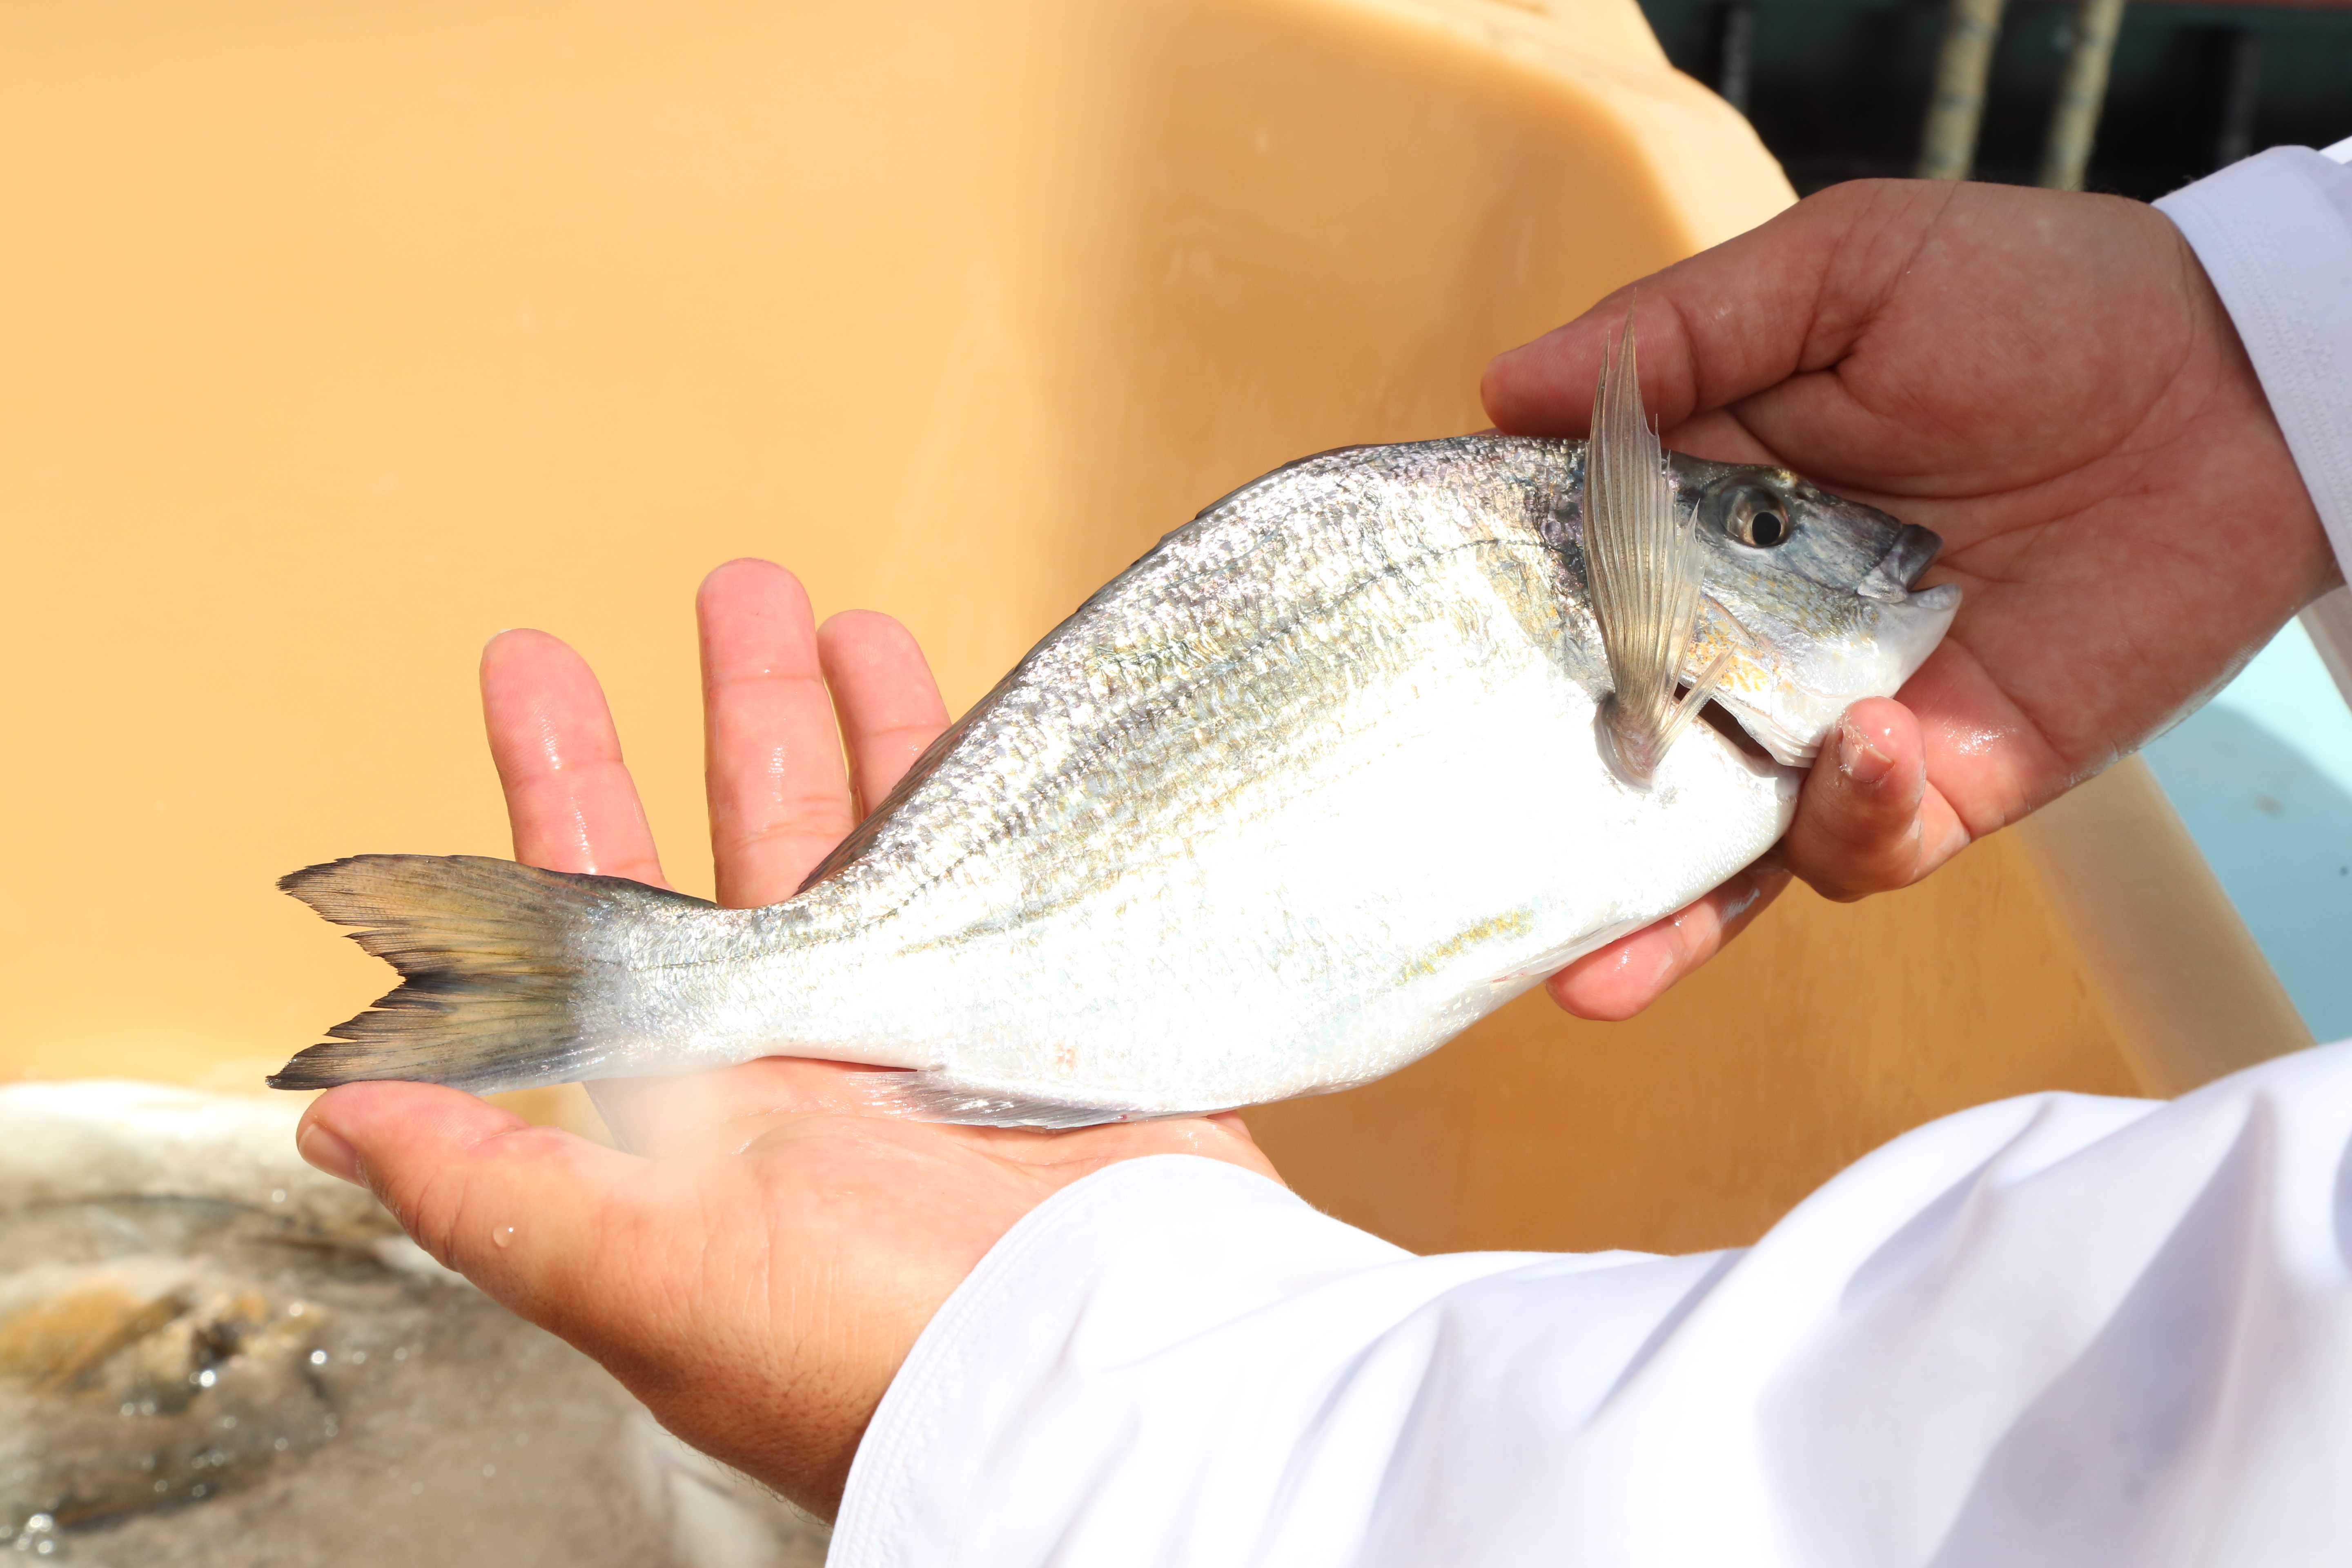 بدء حصاد أسماك الكوفر في مشروع الاستزراع السمكي بقريات